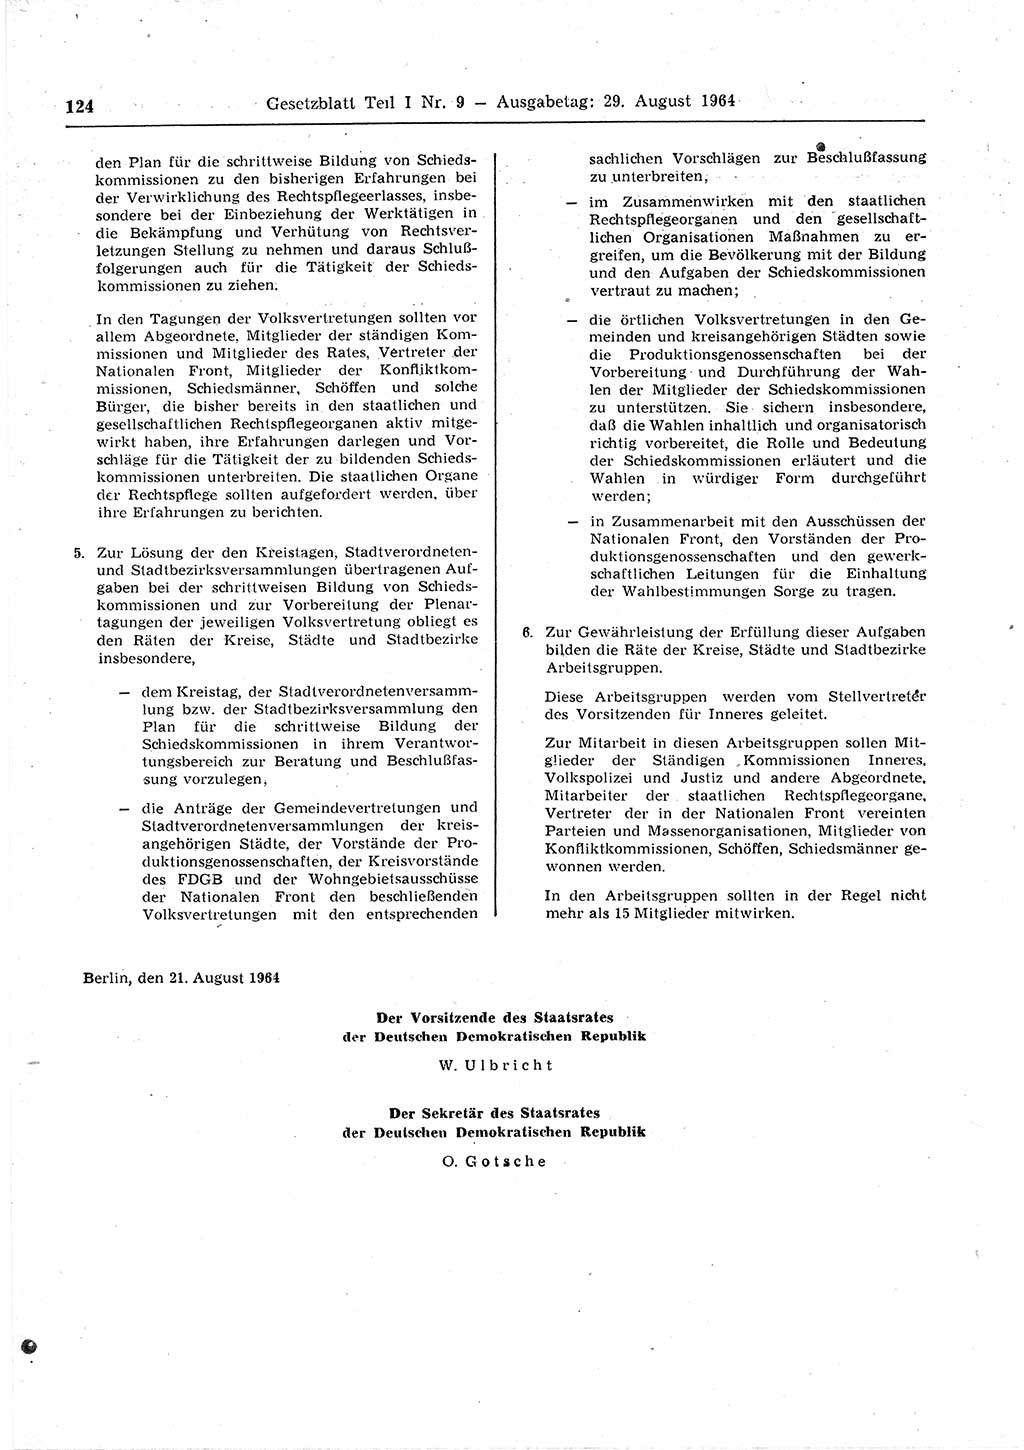 Gesetzblatt (GBl.) der Deutschen Demokratischen Republik (DDR) Teil Ⅰ 1964, Seite 124 (GBl. DDR Ⅰ 1964, S. 124)